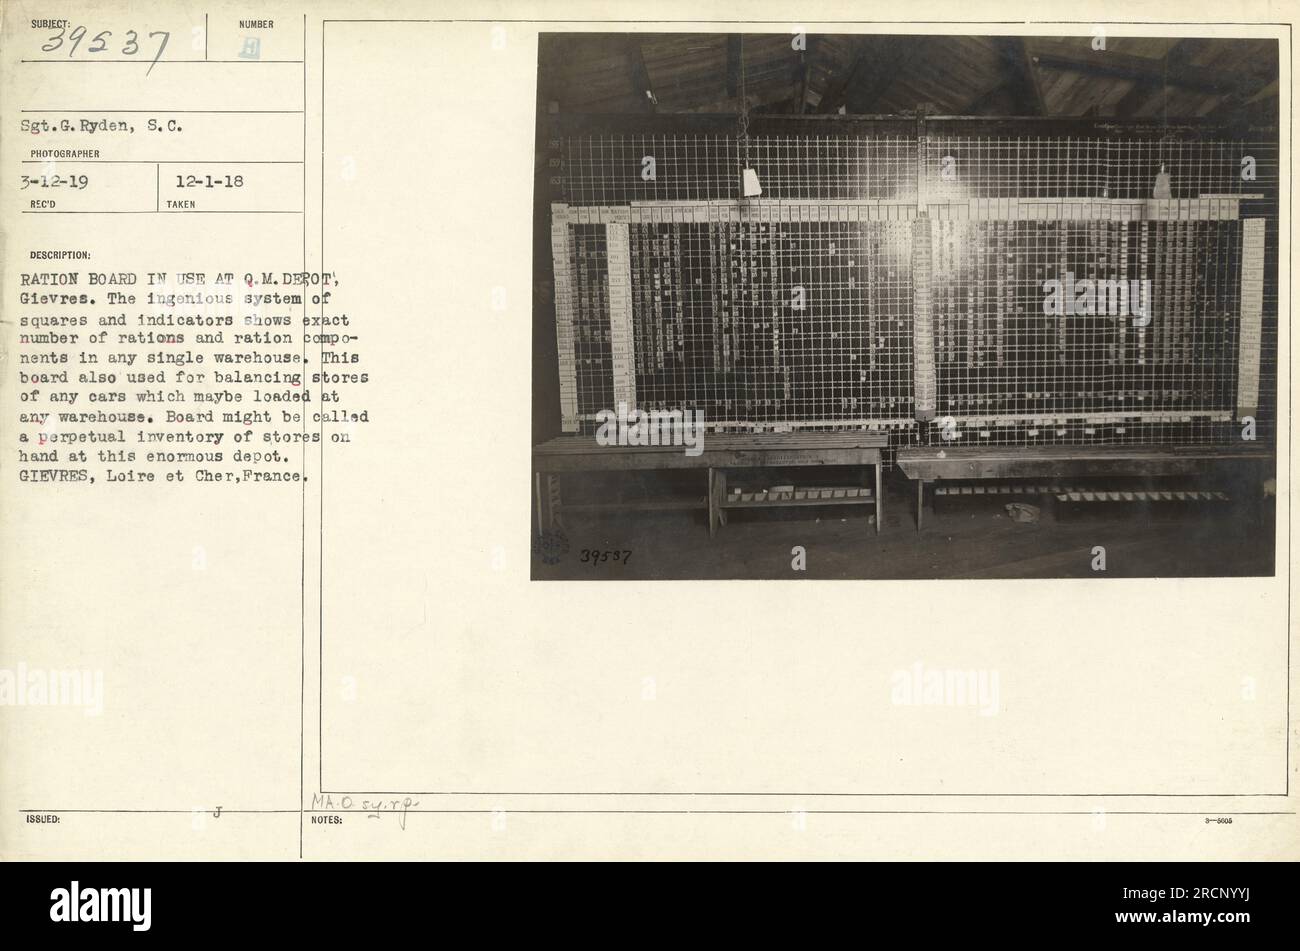 'Stgt.G.. Ryden von S.C. hat am 12. März 1919 ein Foto aufgenommen, auf dem die Rationierung gezeigt wird, die beim Q.M. in Gebrauch ist Depot in Gievres. Die Tafel besteht aus Quadraten und Indikatoren und zeigt die Anzahl der Rationen und Rationskomponenten in jedem Lager genau an. Es dient als permanentes Inventarsystem für die Lager des Depots." Stockfoto